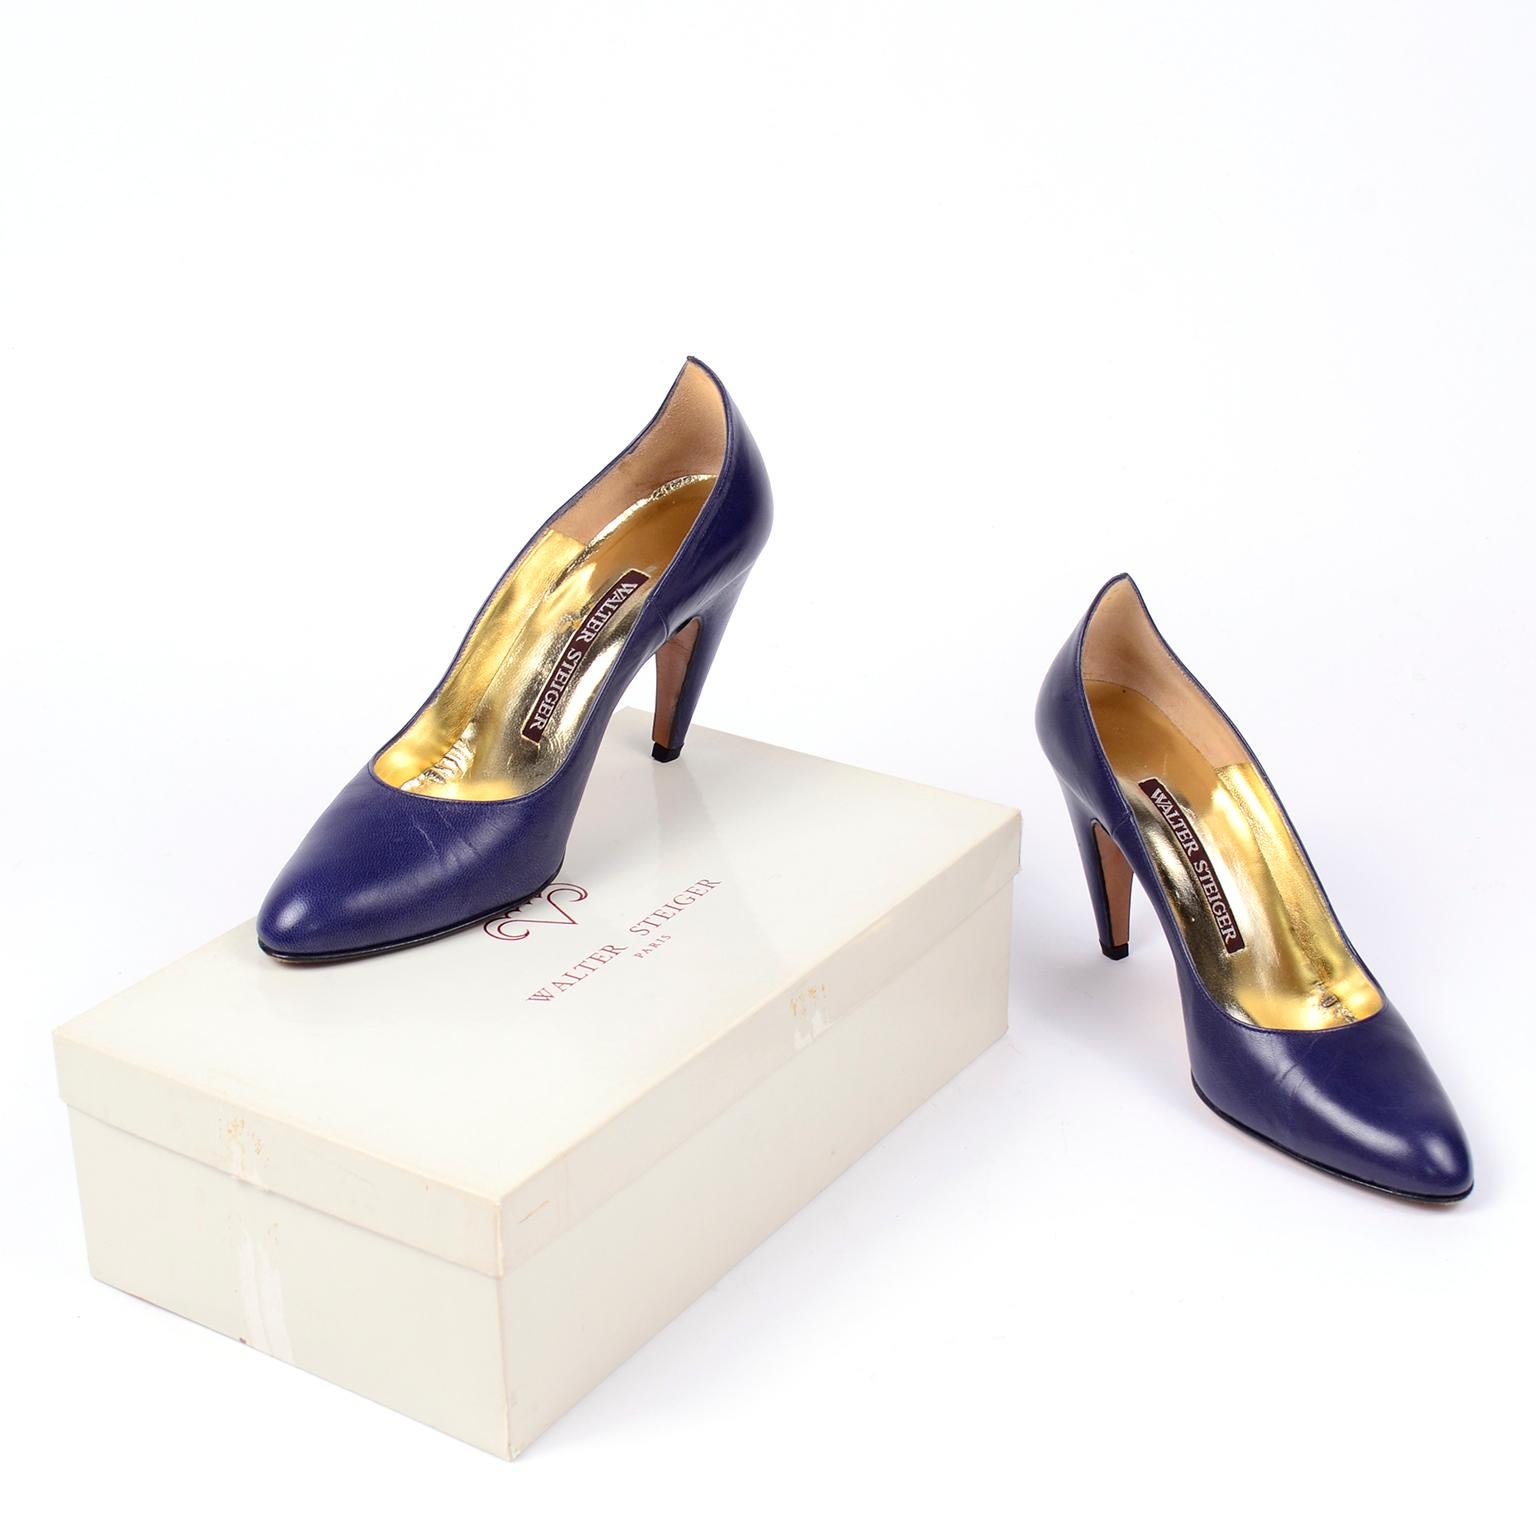 Ces incroyables chaussures vintage avant-gardistes de Walter Steiger sont un véritable atout pour la mode ! Elles sont réalisées dans un magnifique cuir bleu royal et sont dotées du talon incurvé unique signé Steiger qui aboutit à une pointe